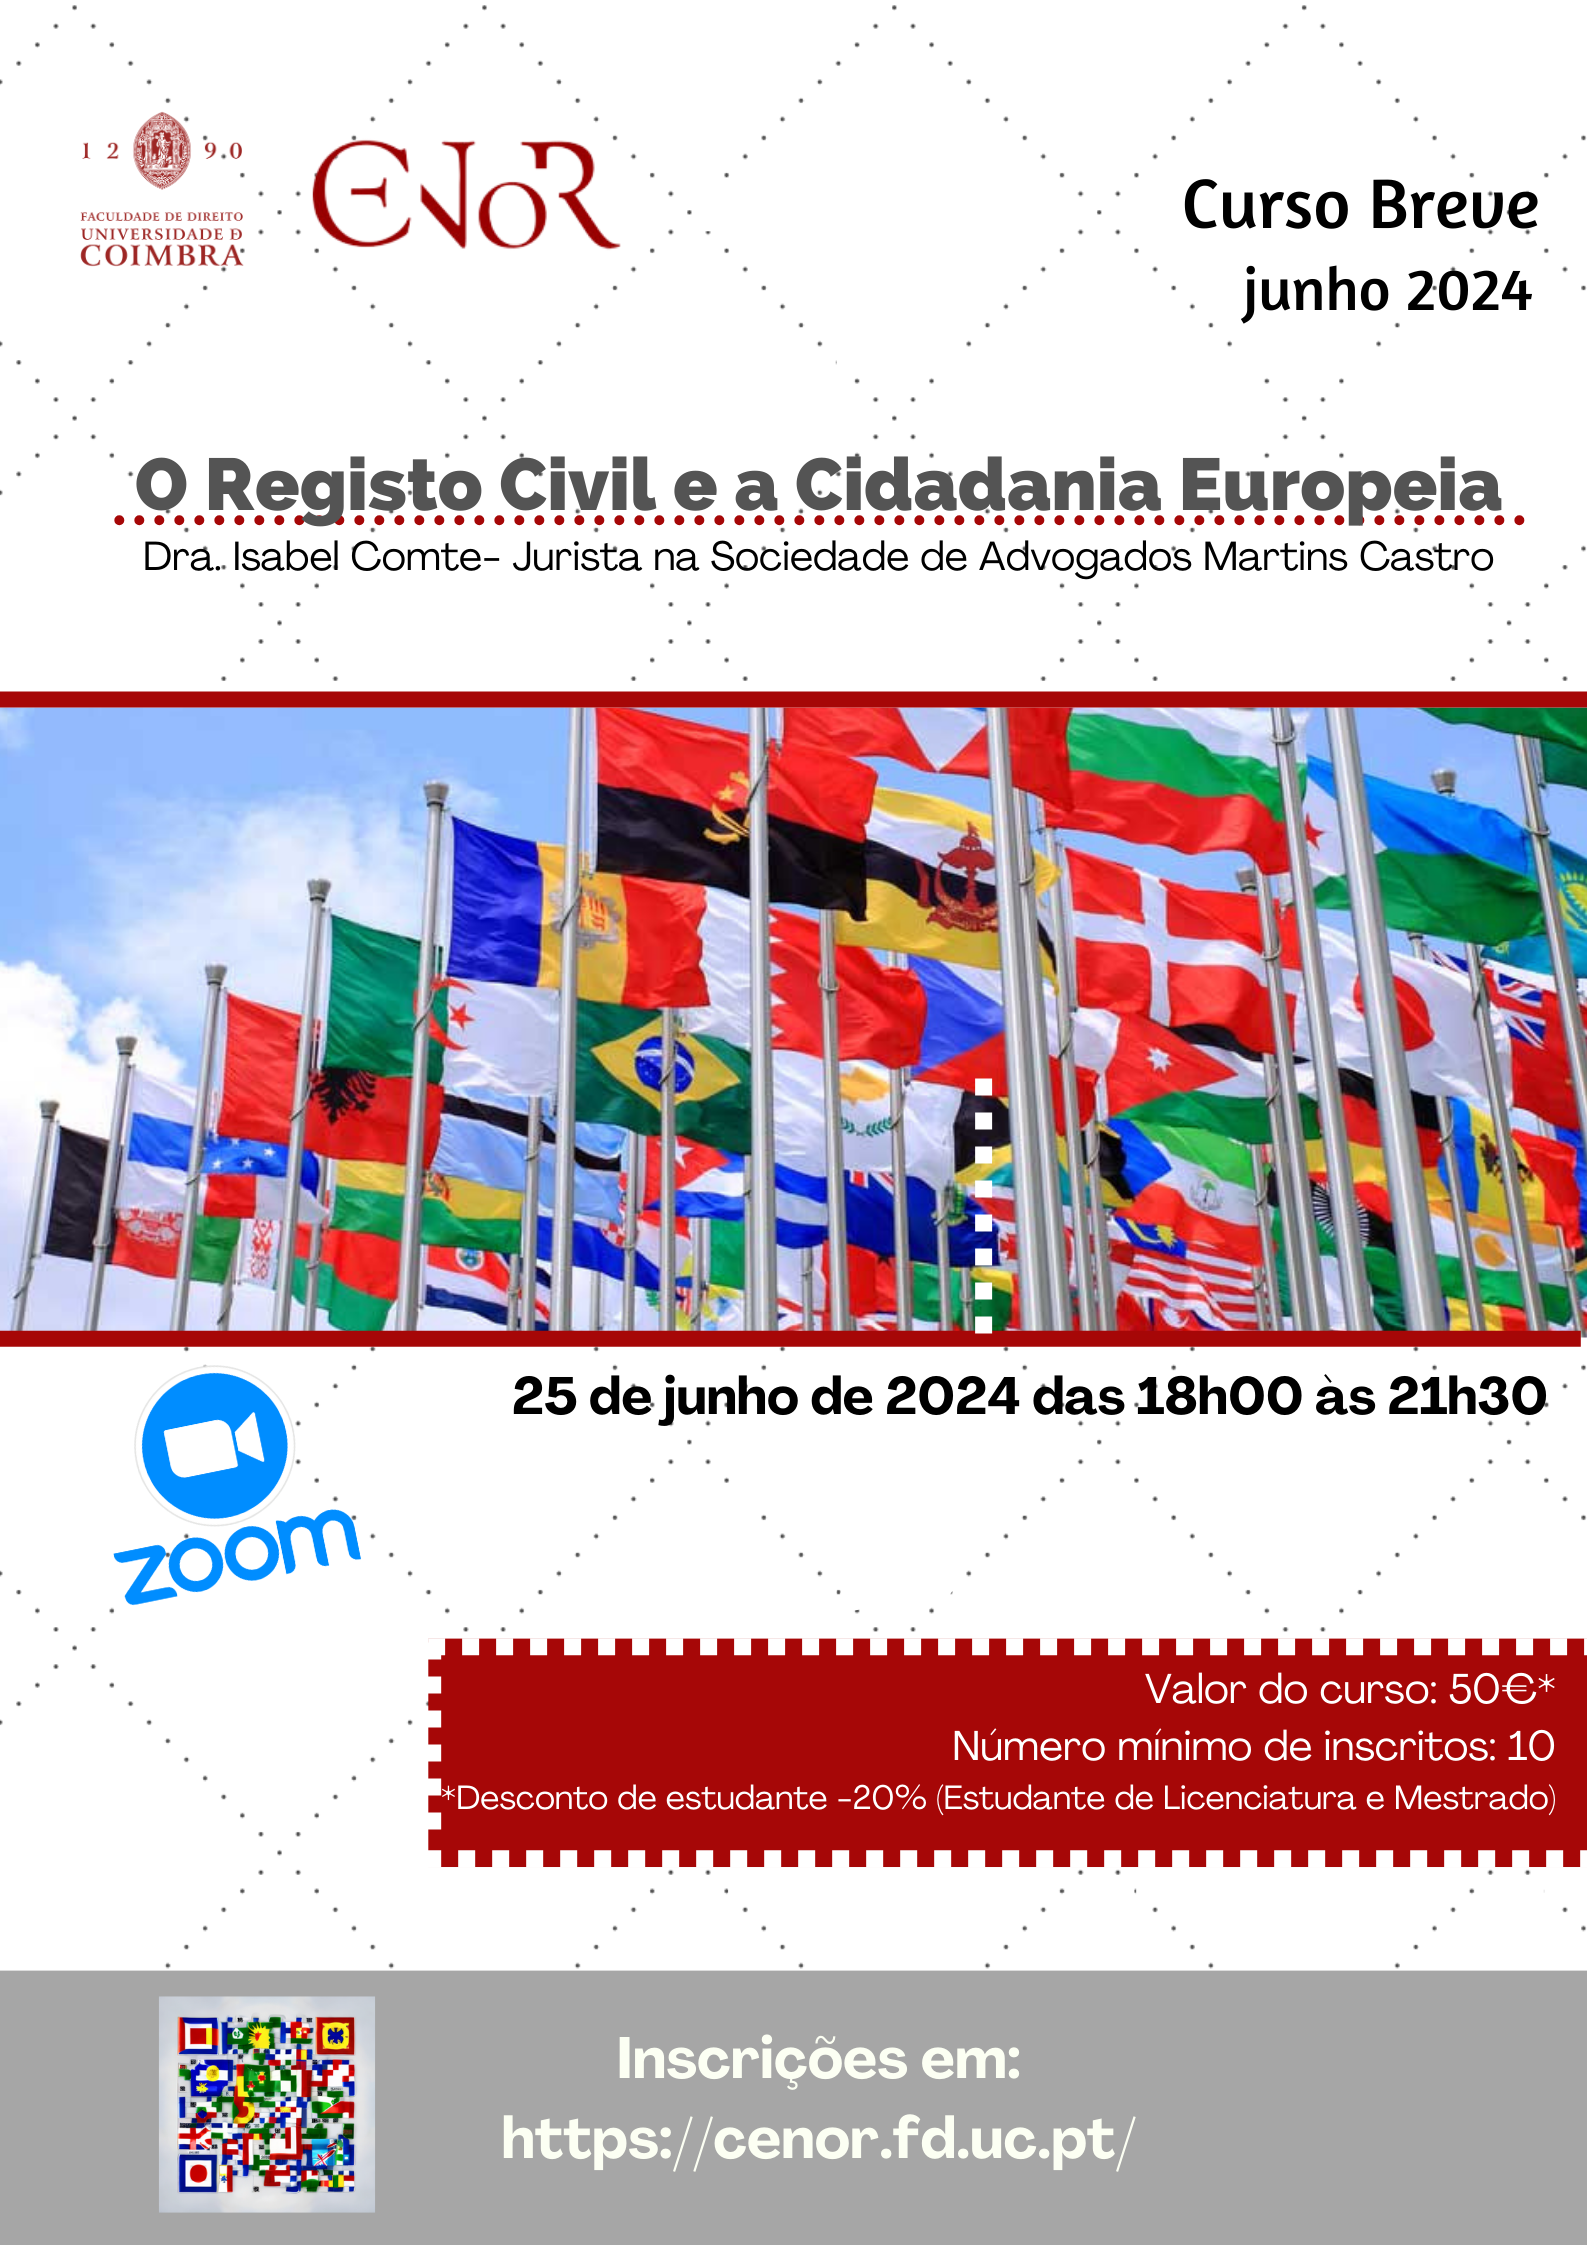 O Registo Civil e a Cidadania Europeia